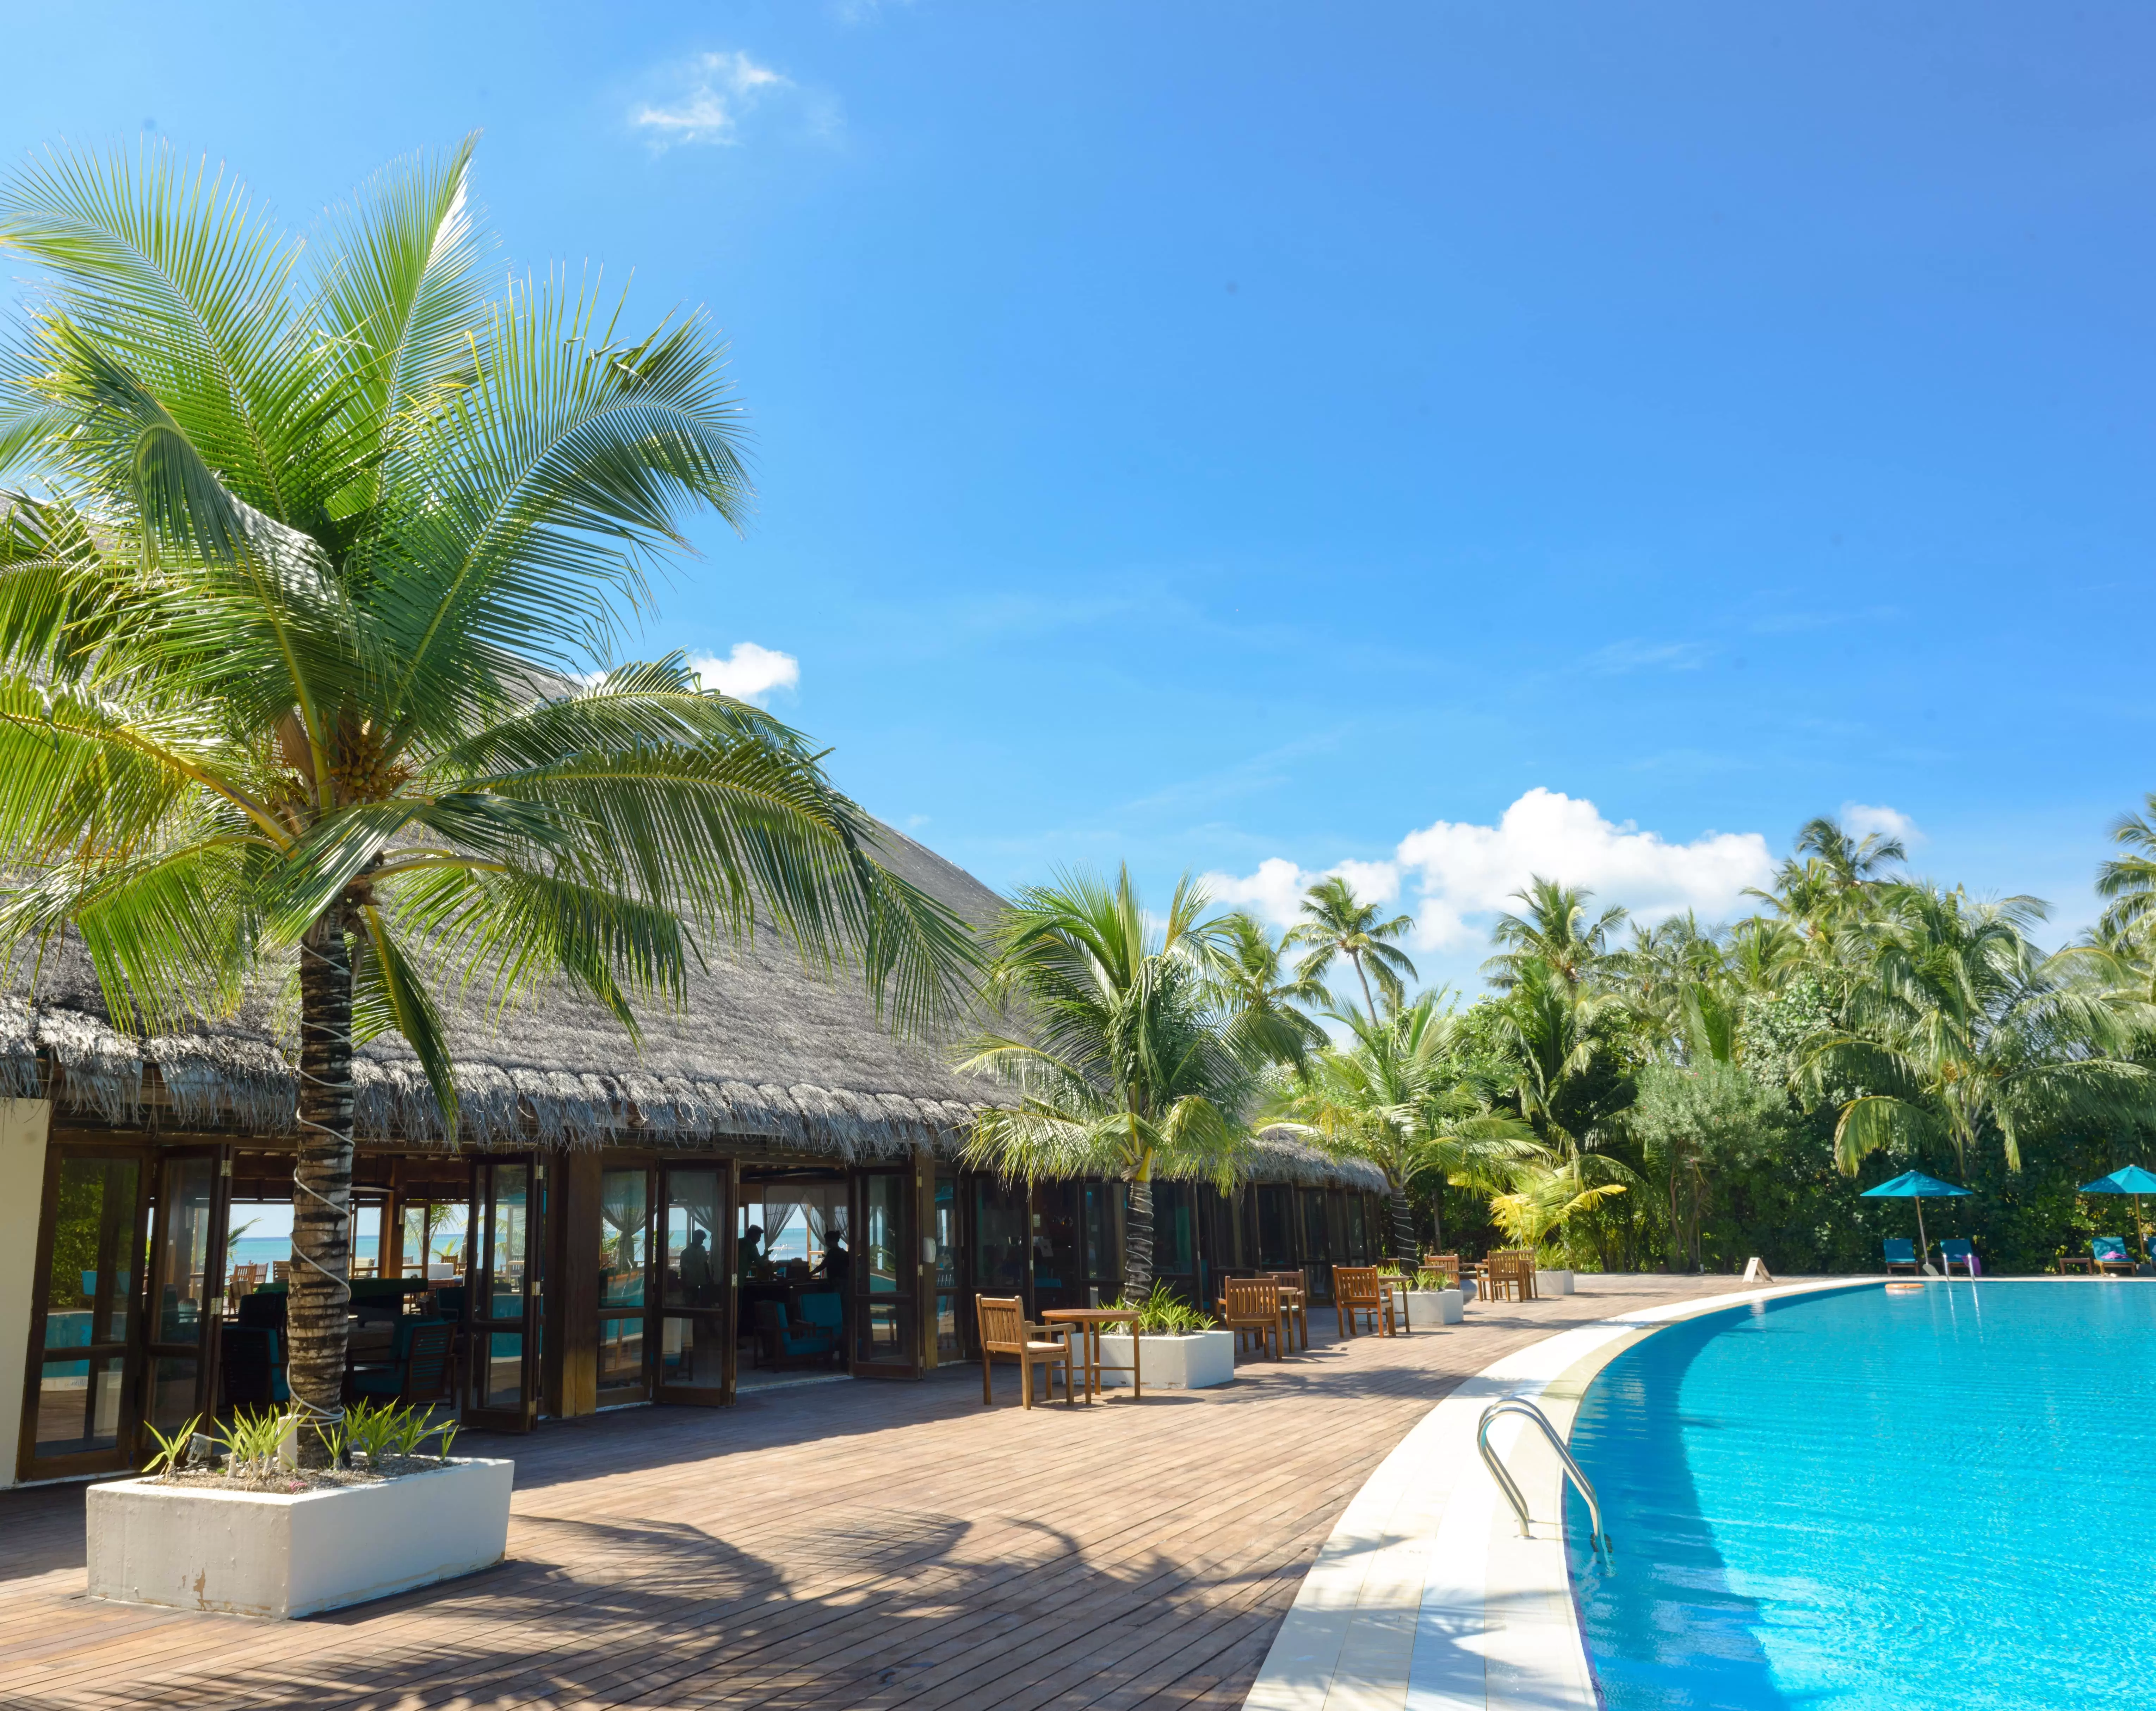 Swimming Pool Repair in Mauritius - WaterPleasures Mauritius